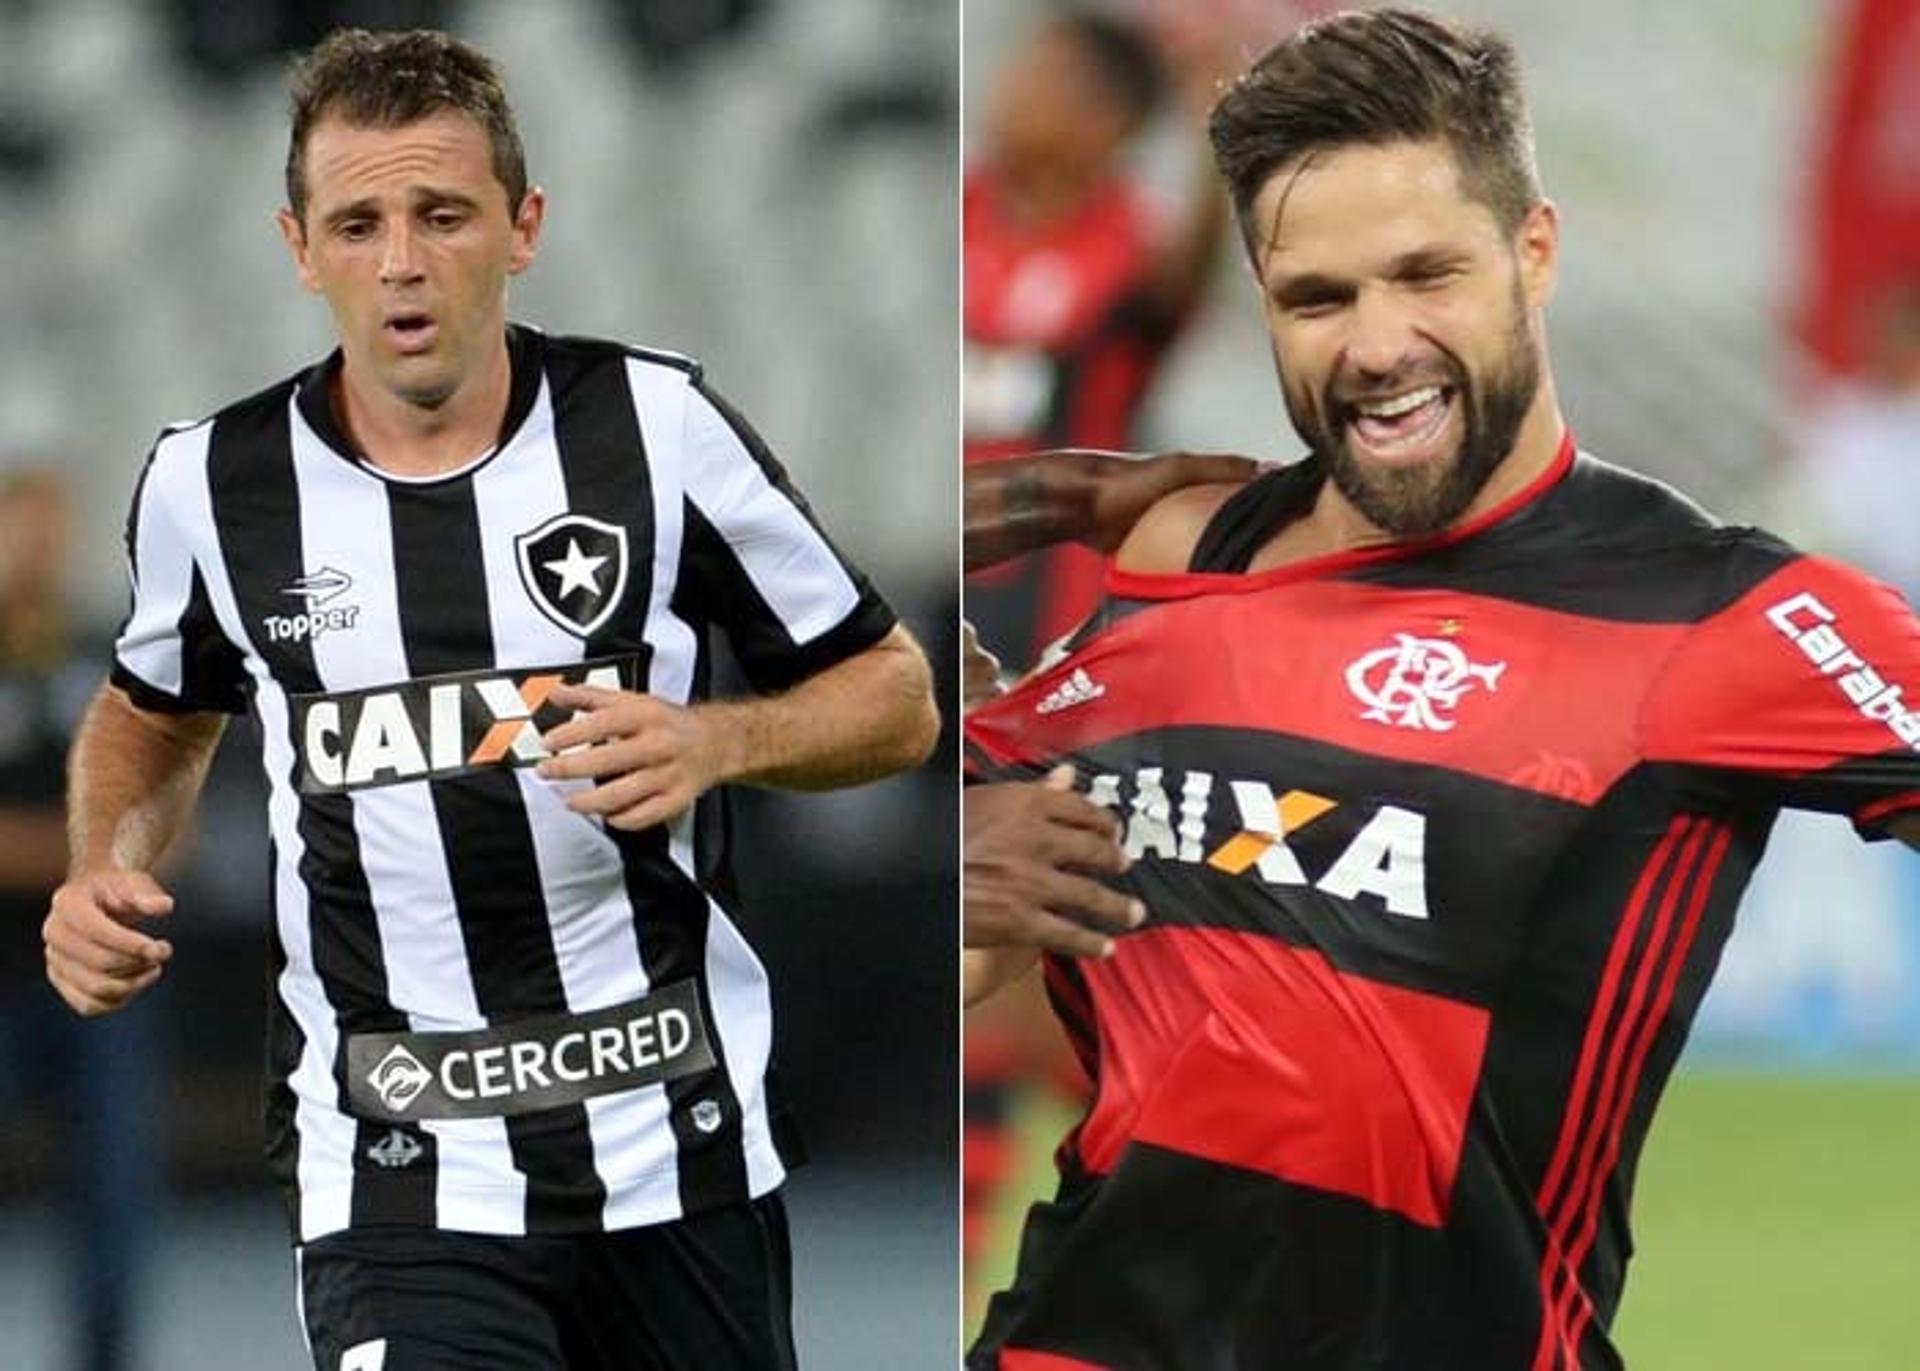 Botafogo, vindo de classificação na Taça Libertadores, e Flamengo, vindo de vitória na Primeira Liga, se enfrentam